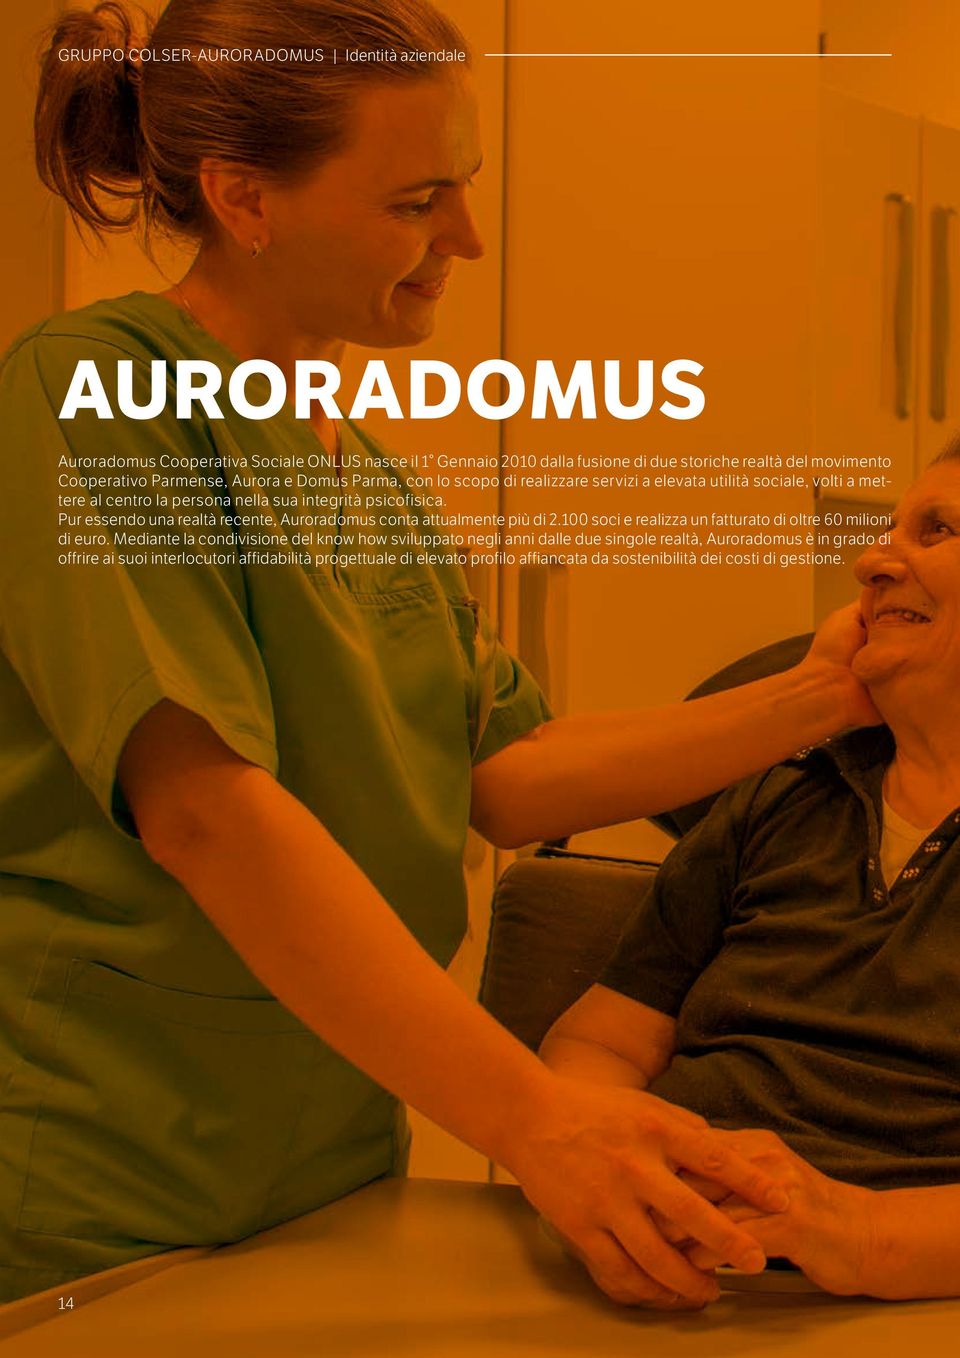 Pur essendo una realtà recente, Auroradomus conta attualmente più di 2.100 soci e realizza un fatturato di oltre 60 milioni di euro.